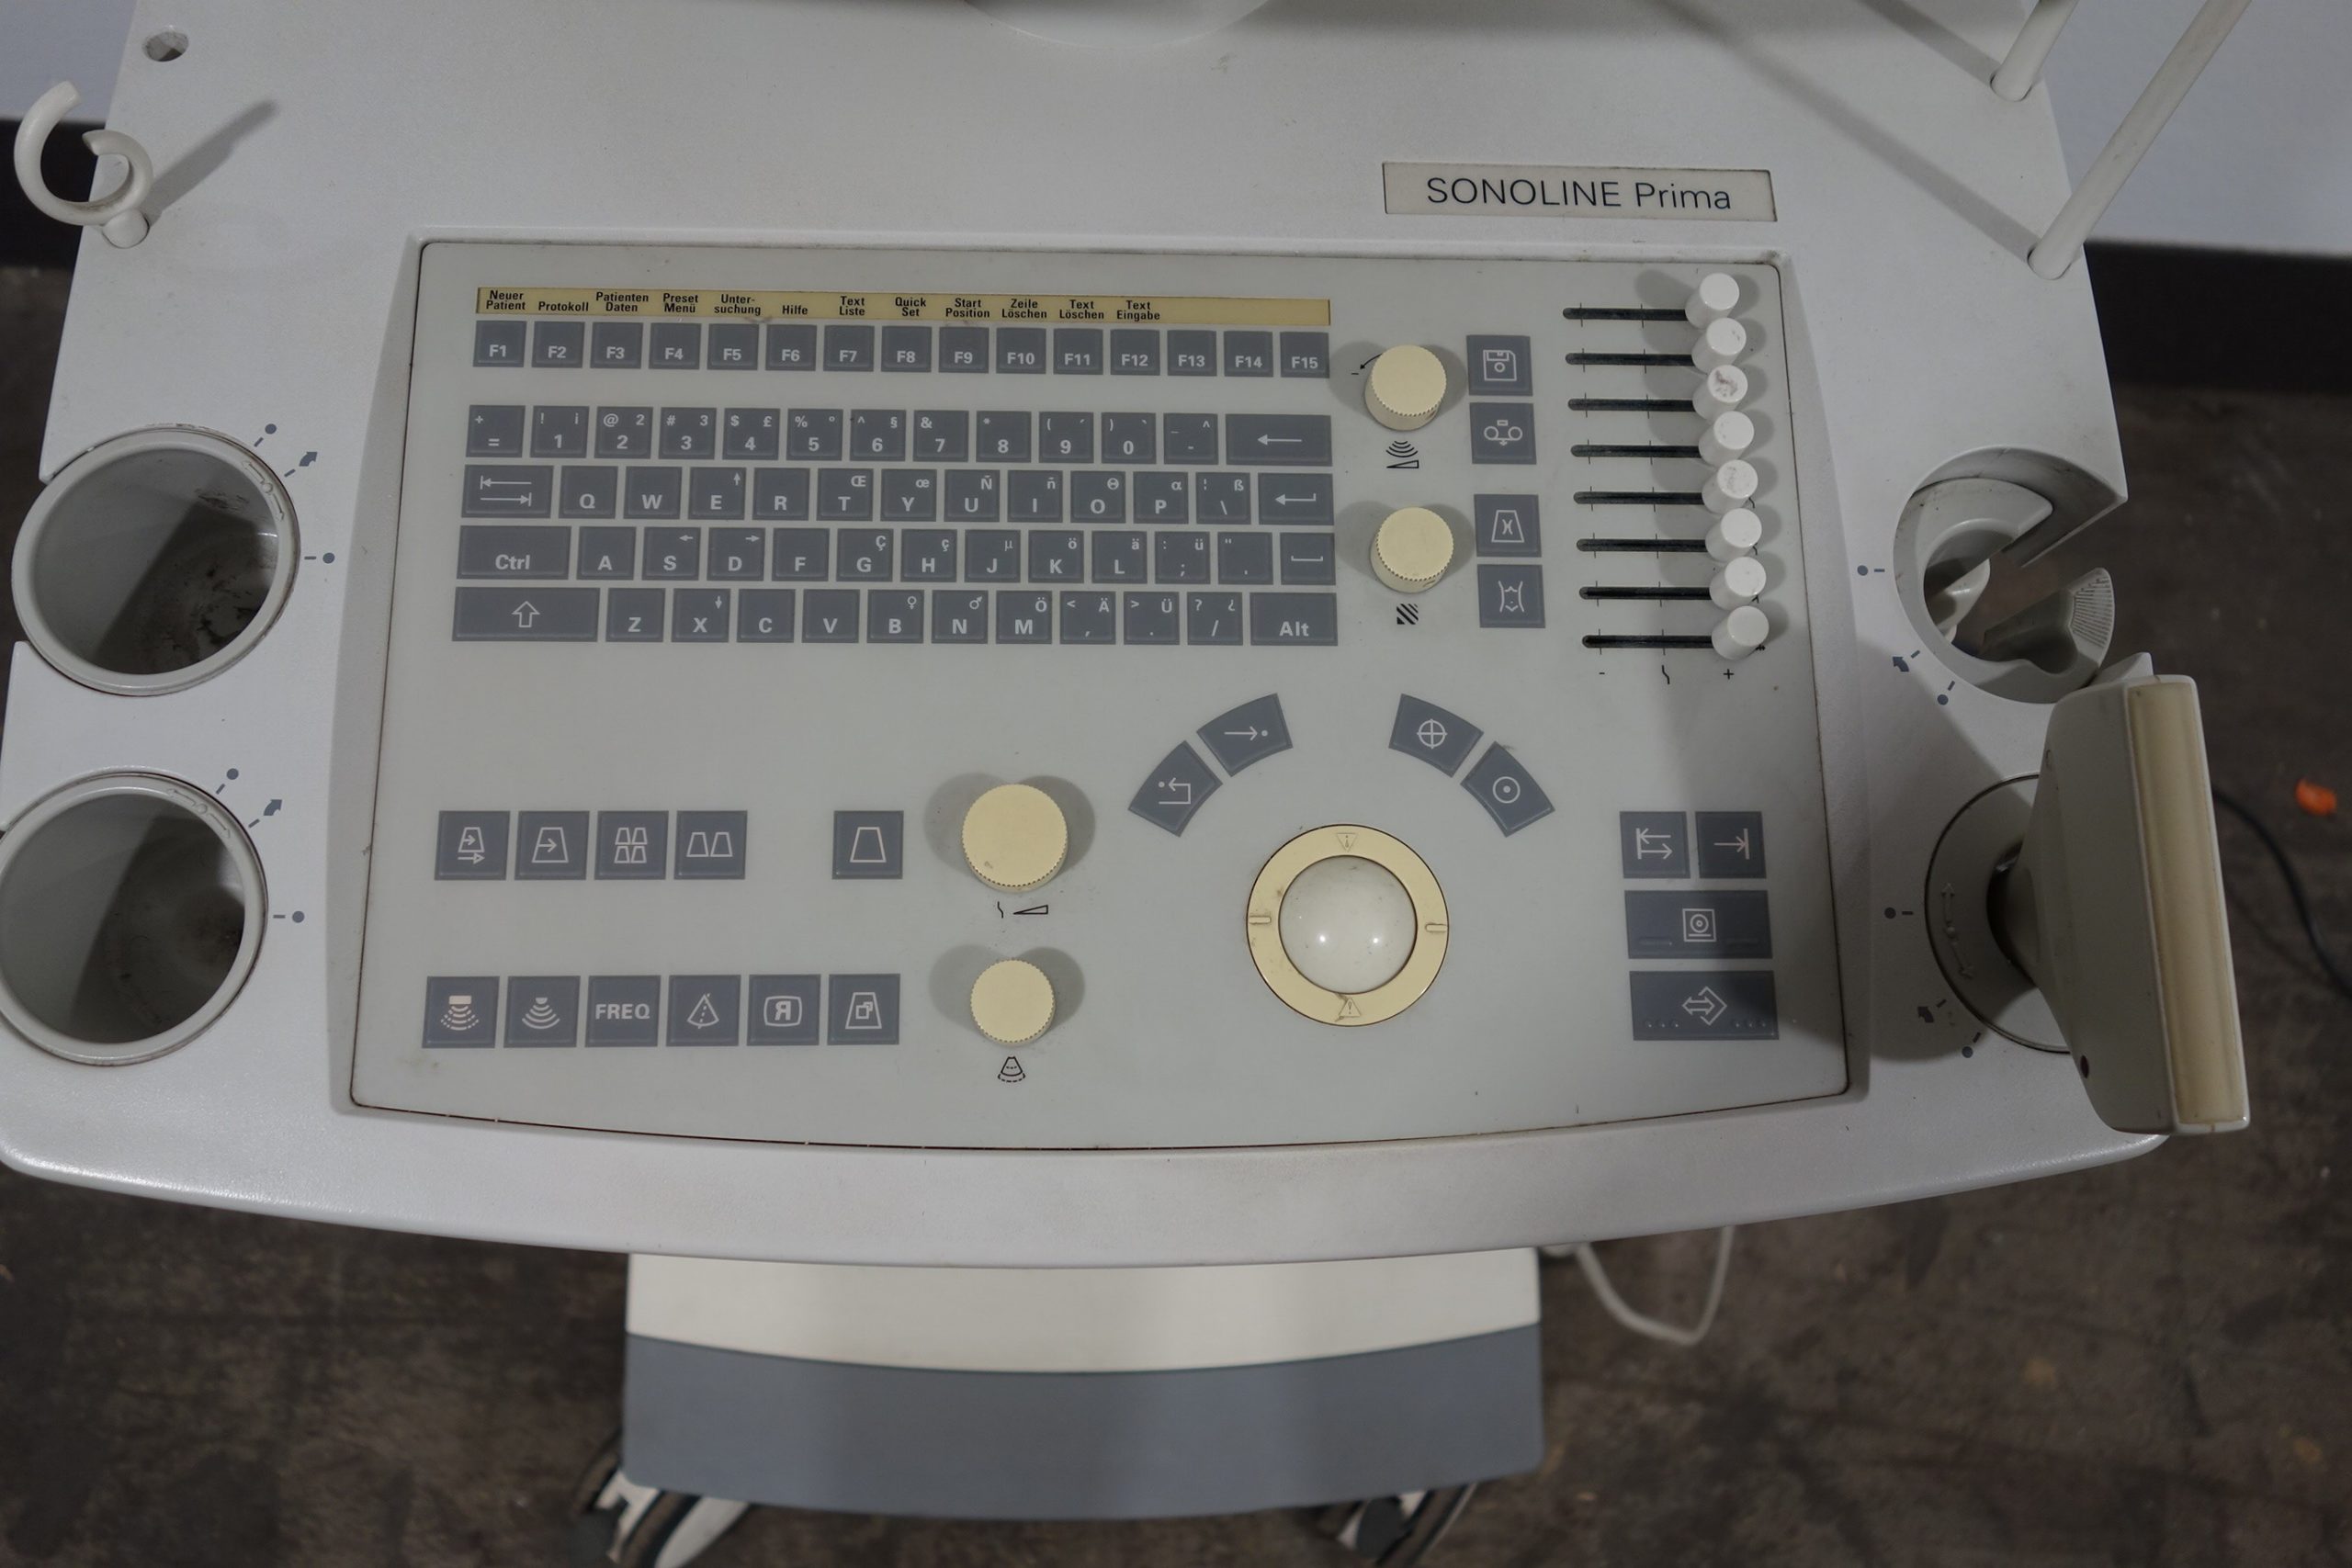 siemens-ultraschallgeraet-sonoline-prima-mit-sonde-und-printer-01